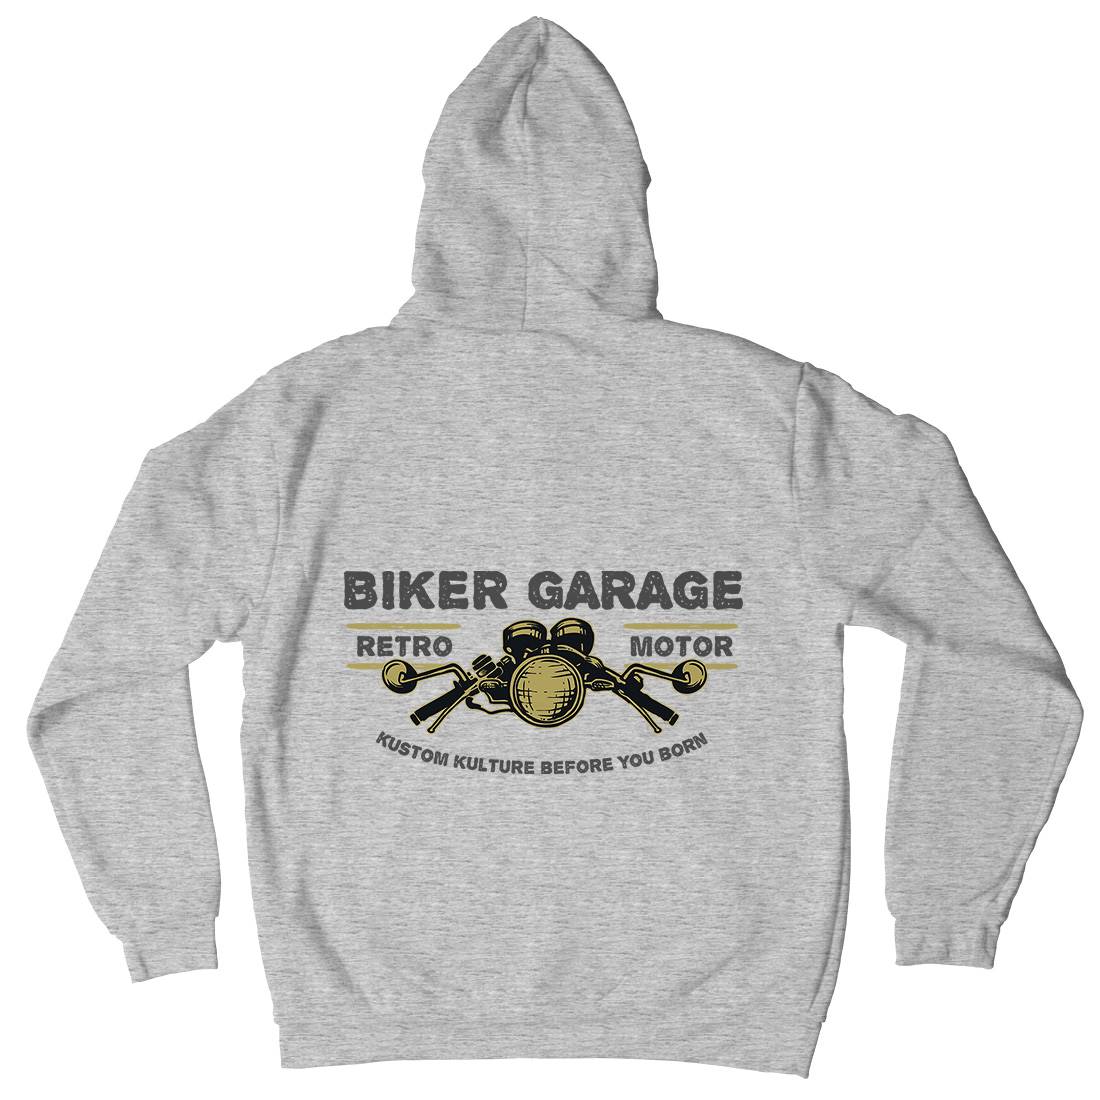 Biker Garage Mens Hoodie With Pocket Motorcycles A303